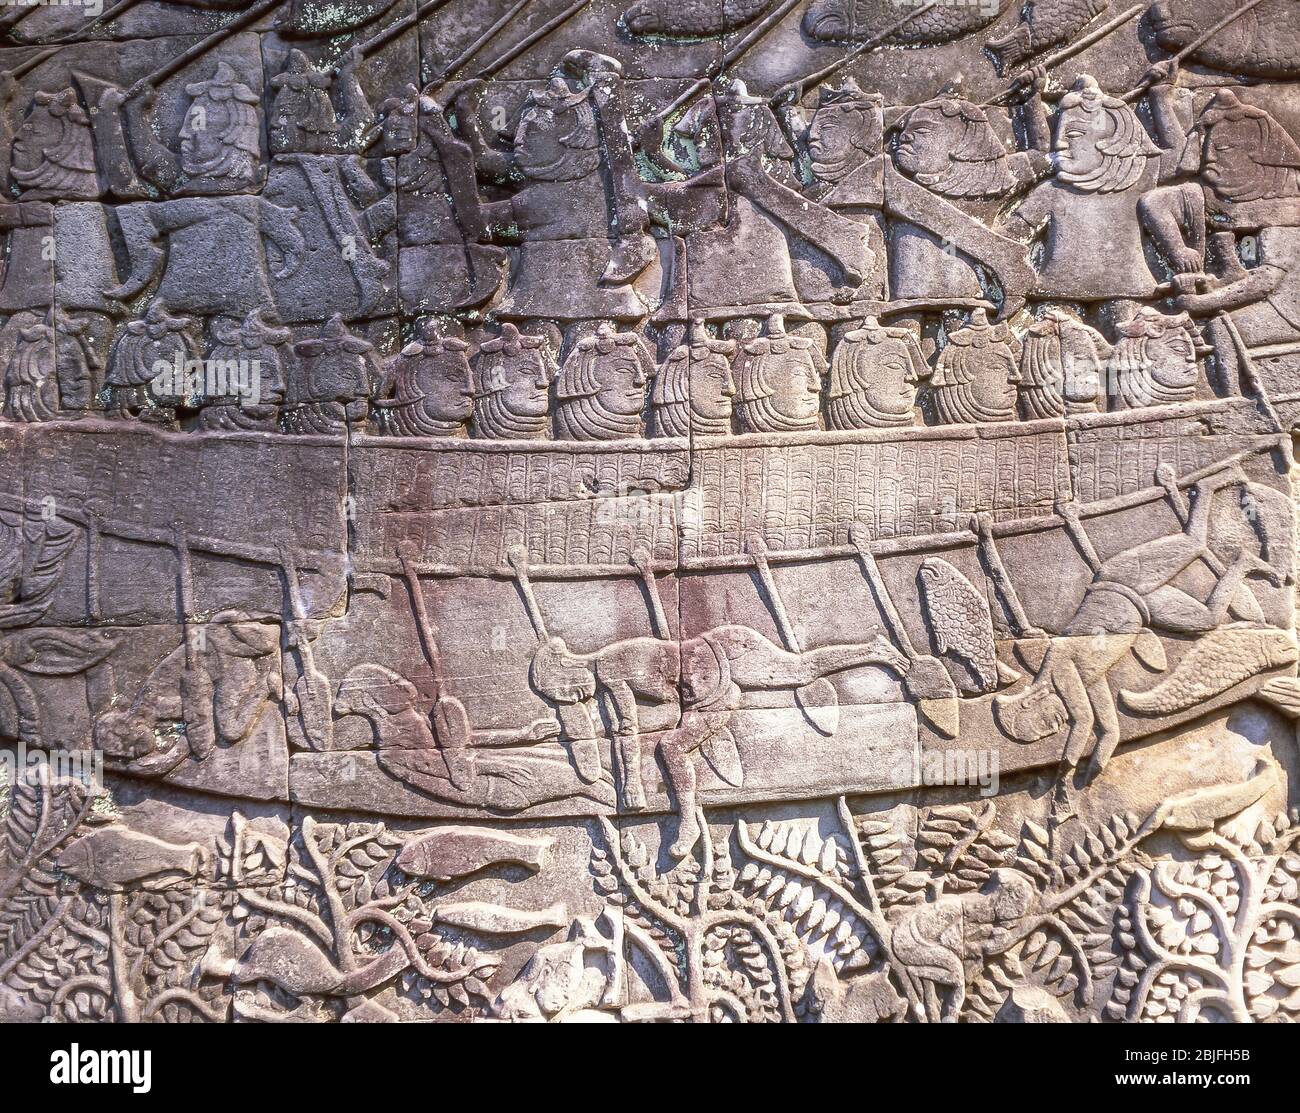 Bas-relief des guerriers de Cham dans un bateau pendant la bataille, galerie sud, le temple de Bayon, Ankor Thom, Siem Reap, Royaume du Cambodge Banque D'Images